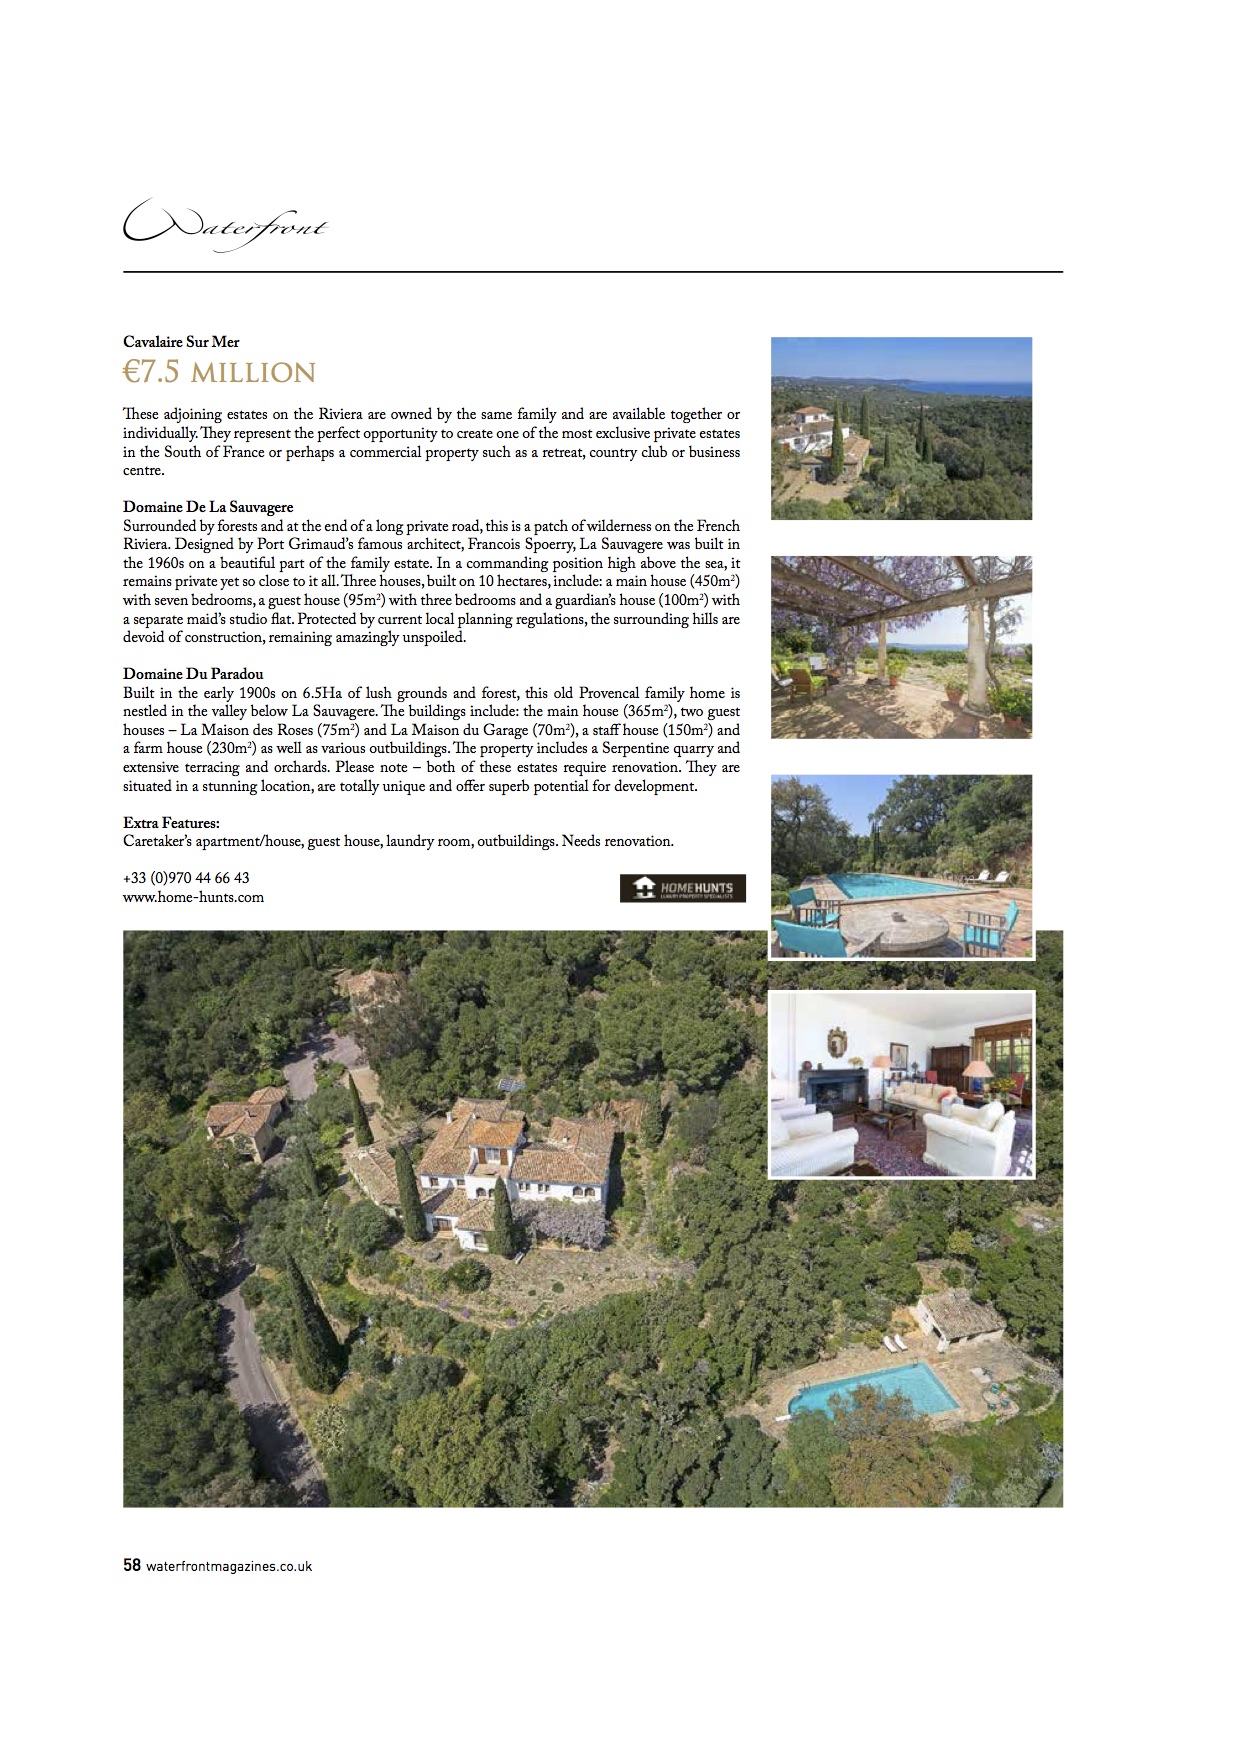 Waterfront Magazine – Stunning estate near Saint Tropez